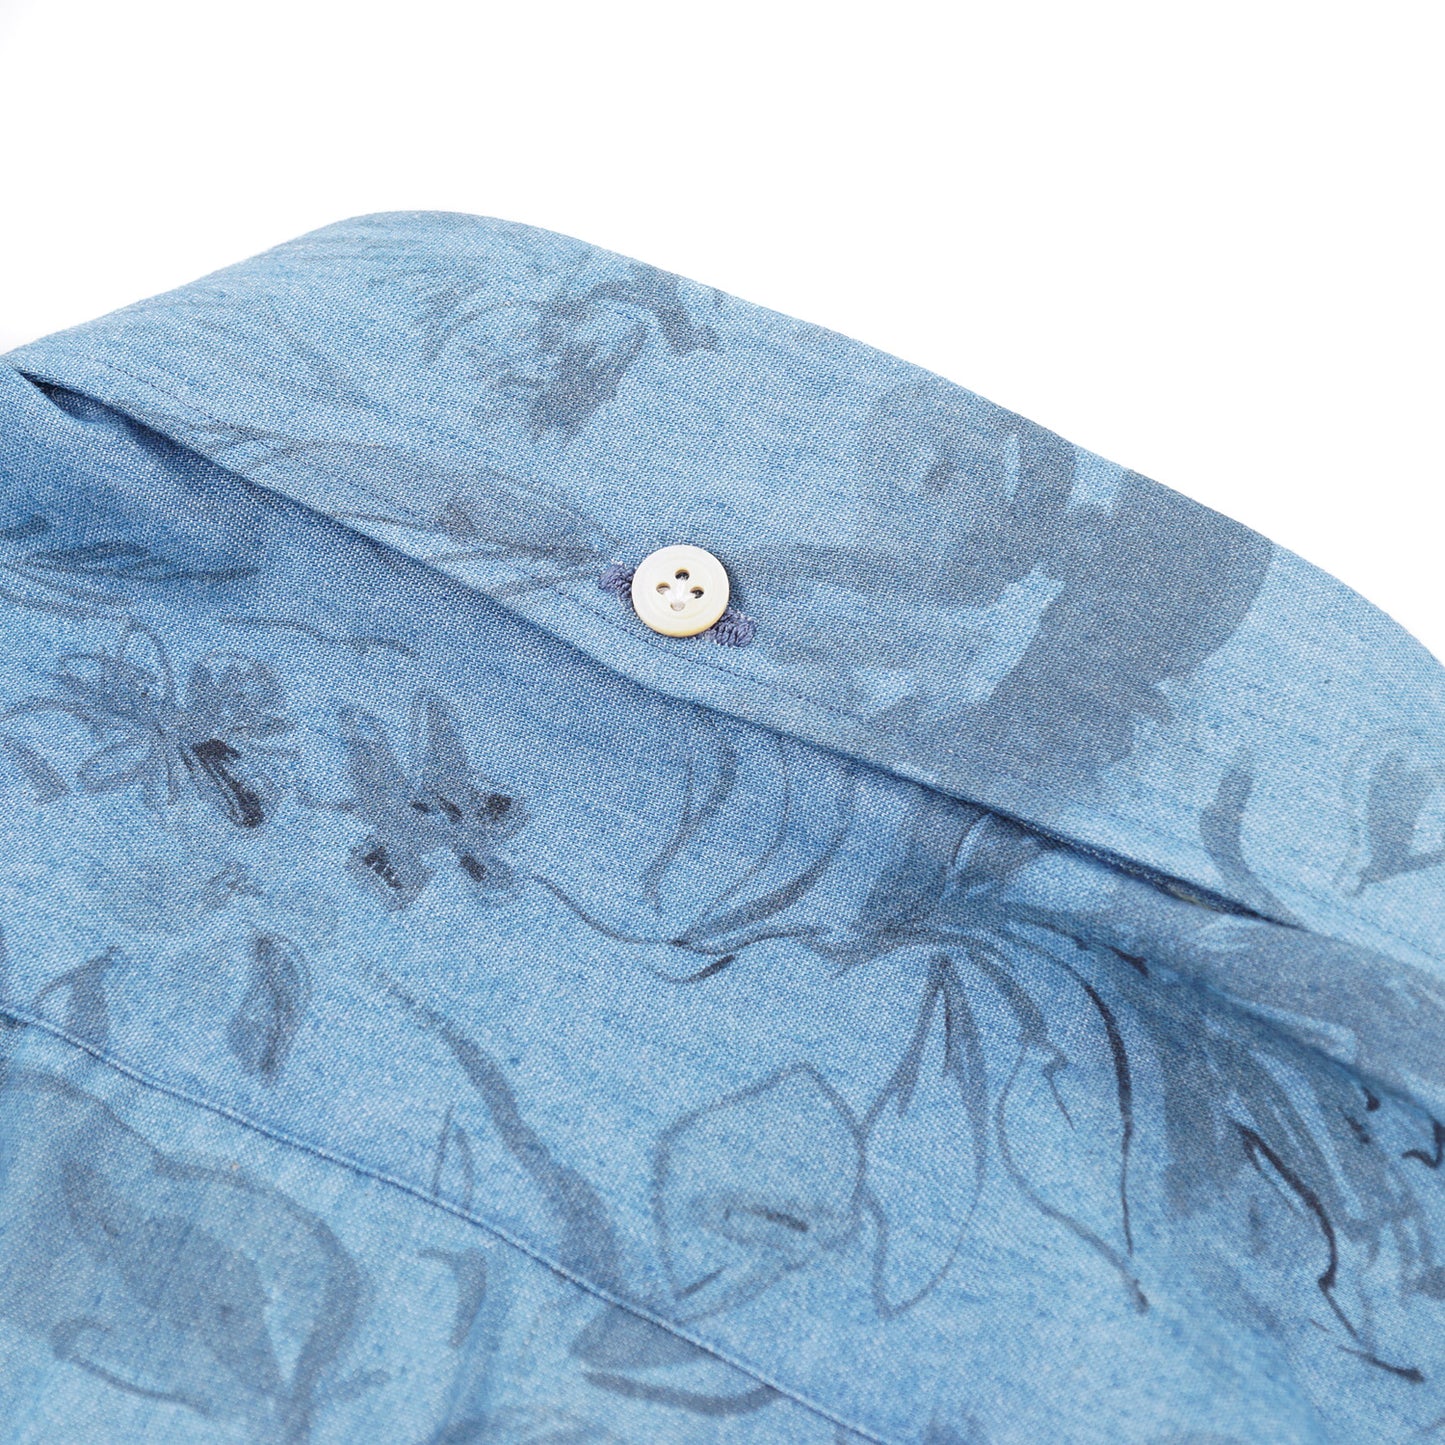 Kiton Floral Print Chambray Cotton Shirt - Top Shelf Apparel